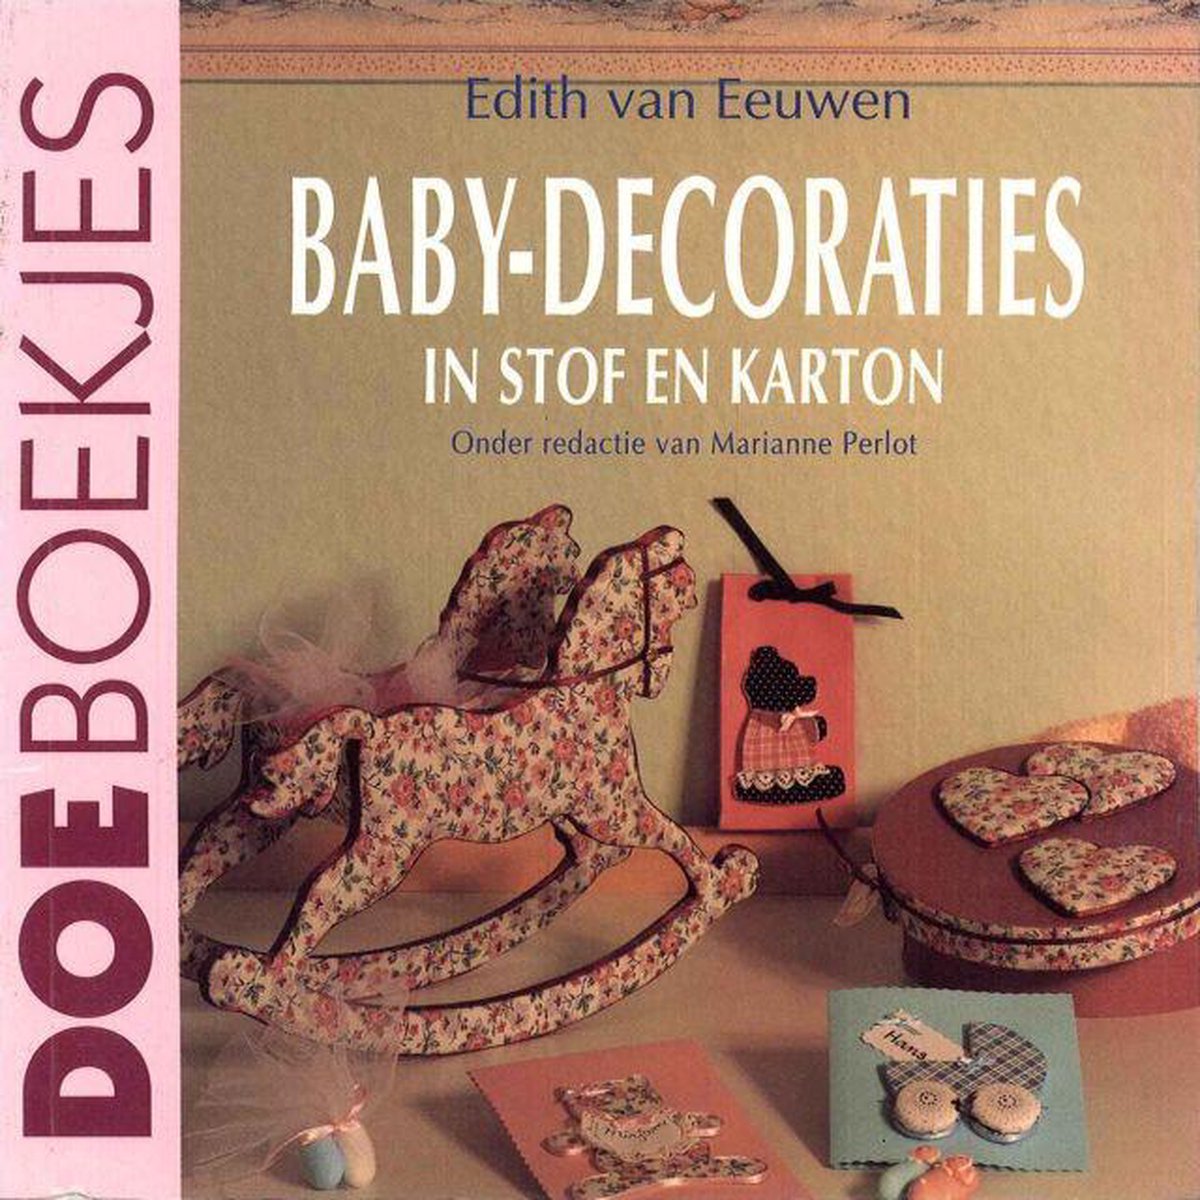 Baby decoraties in stof en karton.